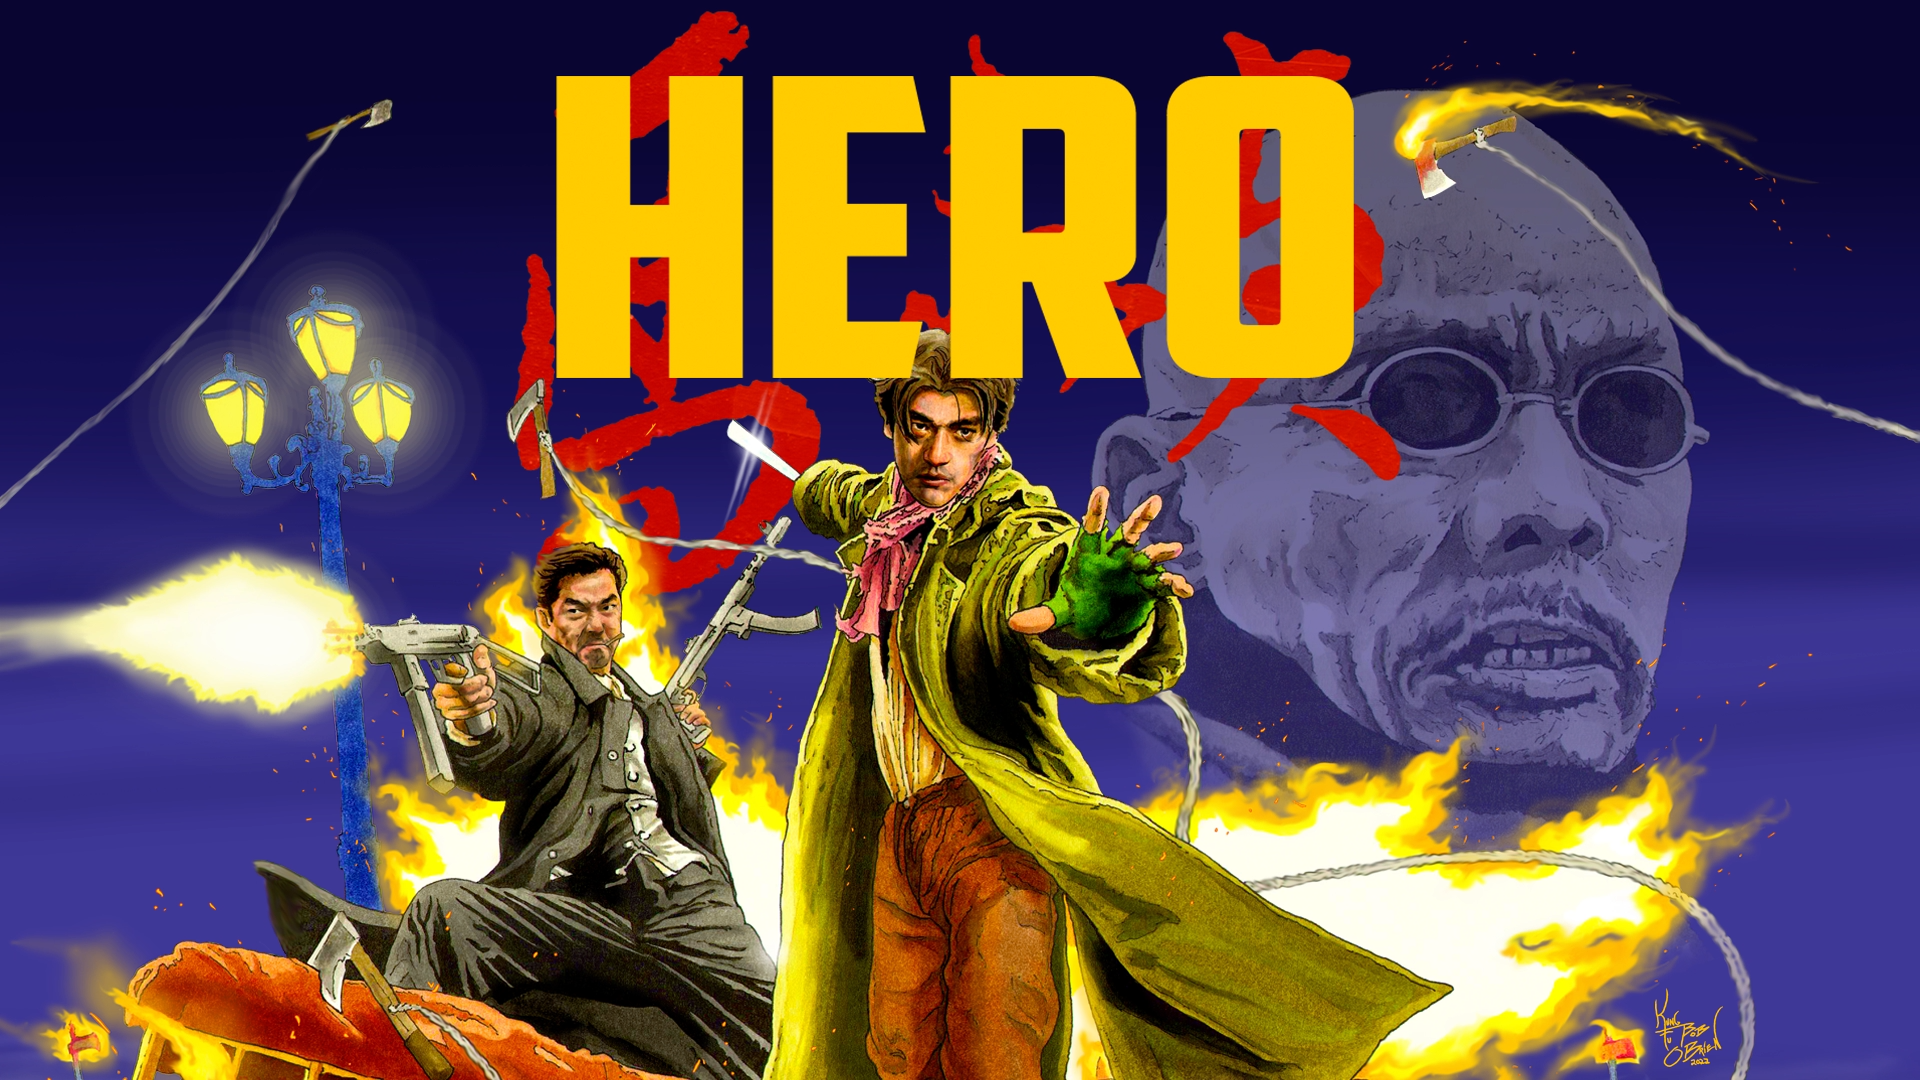 马永贞/馬永貞/Hero [粤语中字].Hero.1997.1080p.GBR.Blu-ray.AVC.LPCM.2.0-TAG 29.58GB